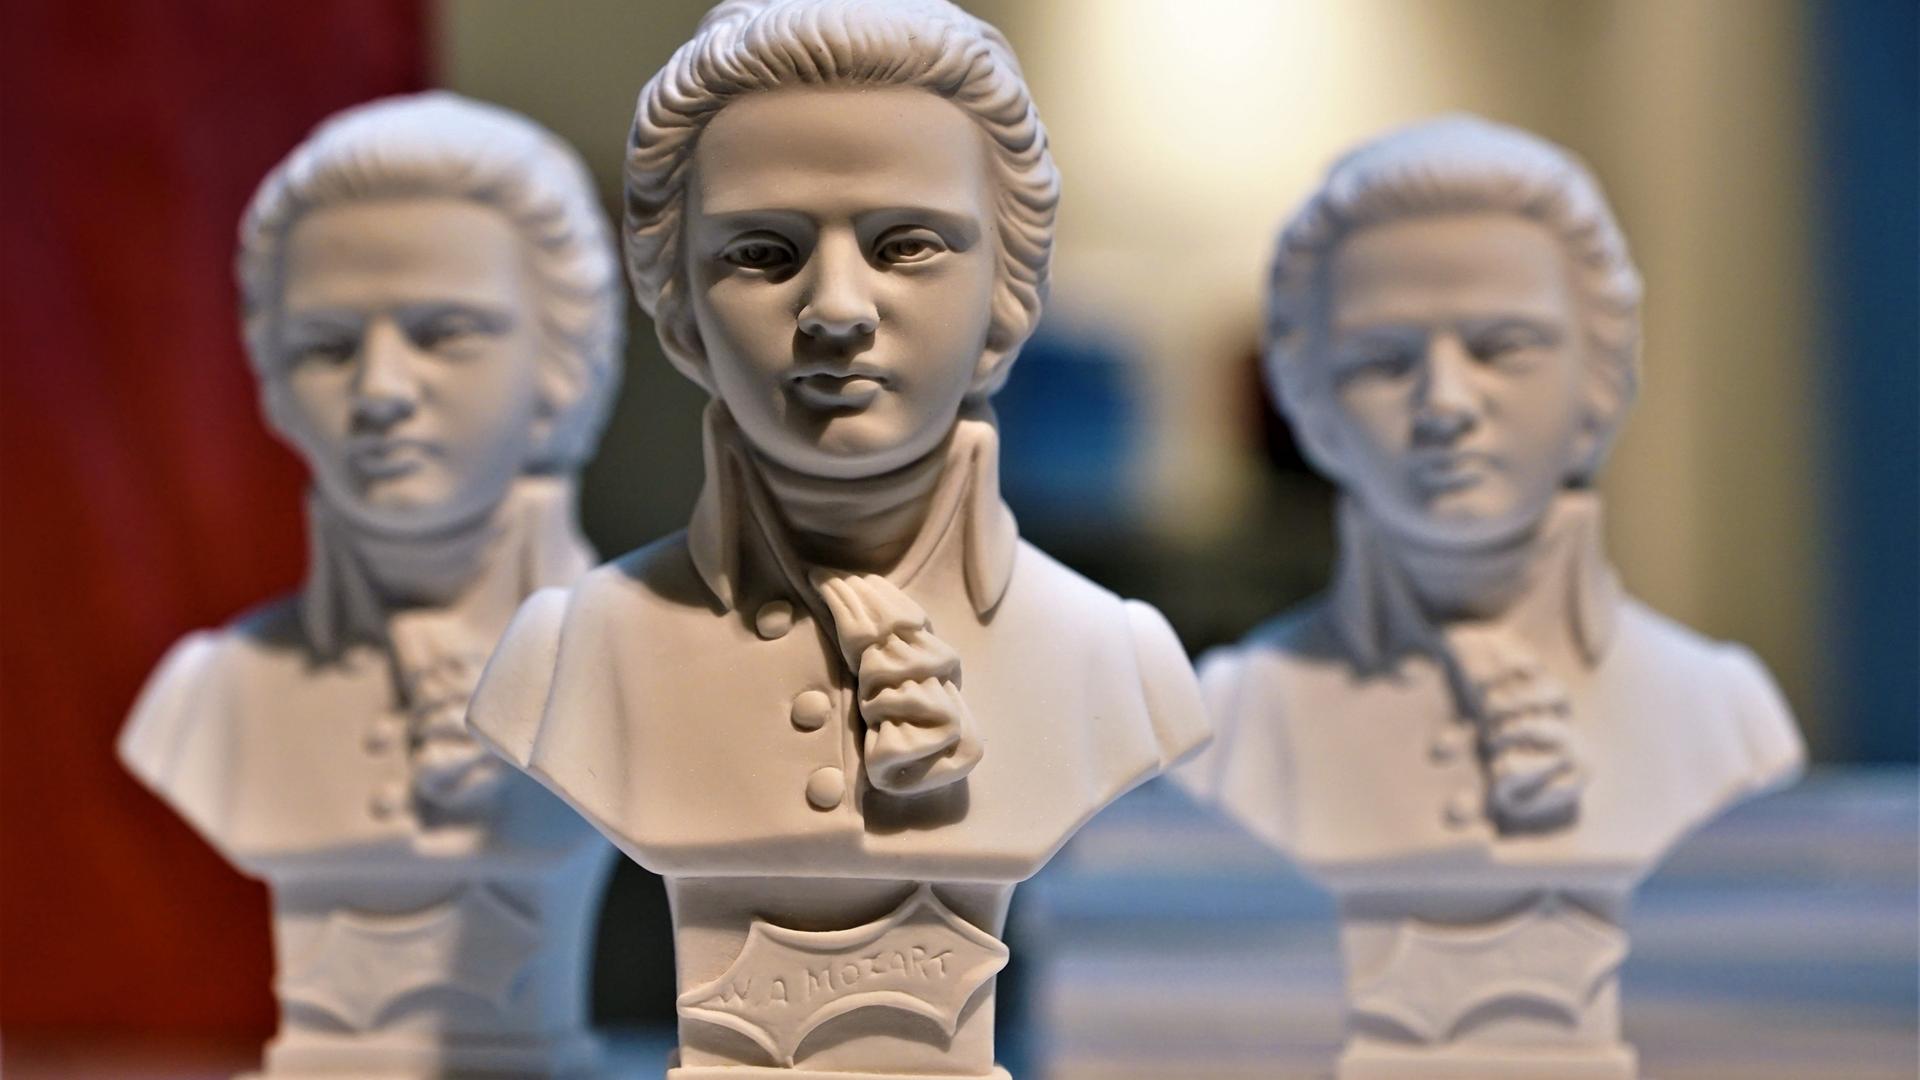 Drei weiße Mozart-Souvenier-Büsten stehen dicht beieinander.